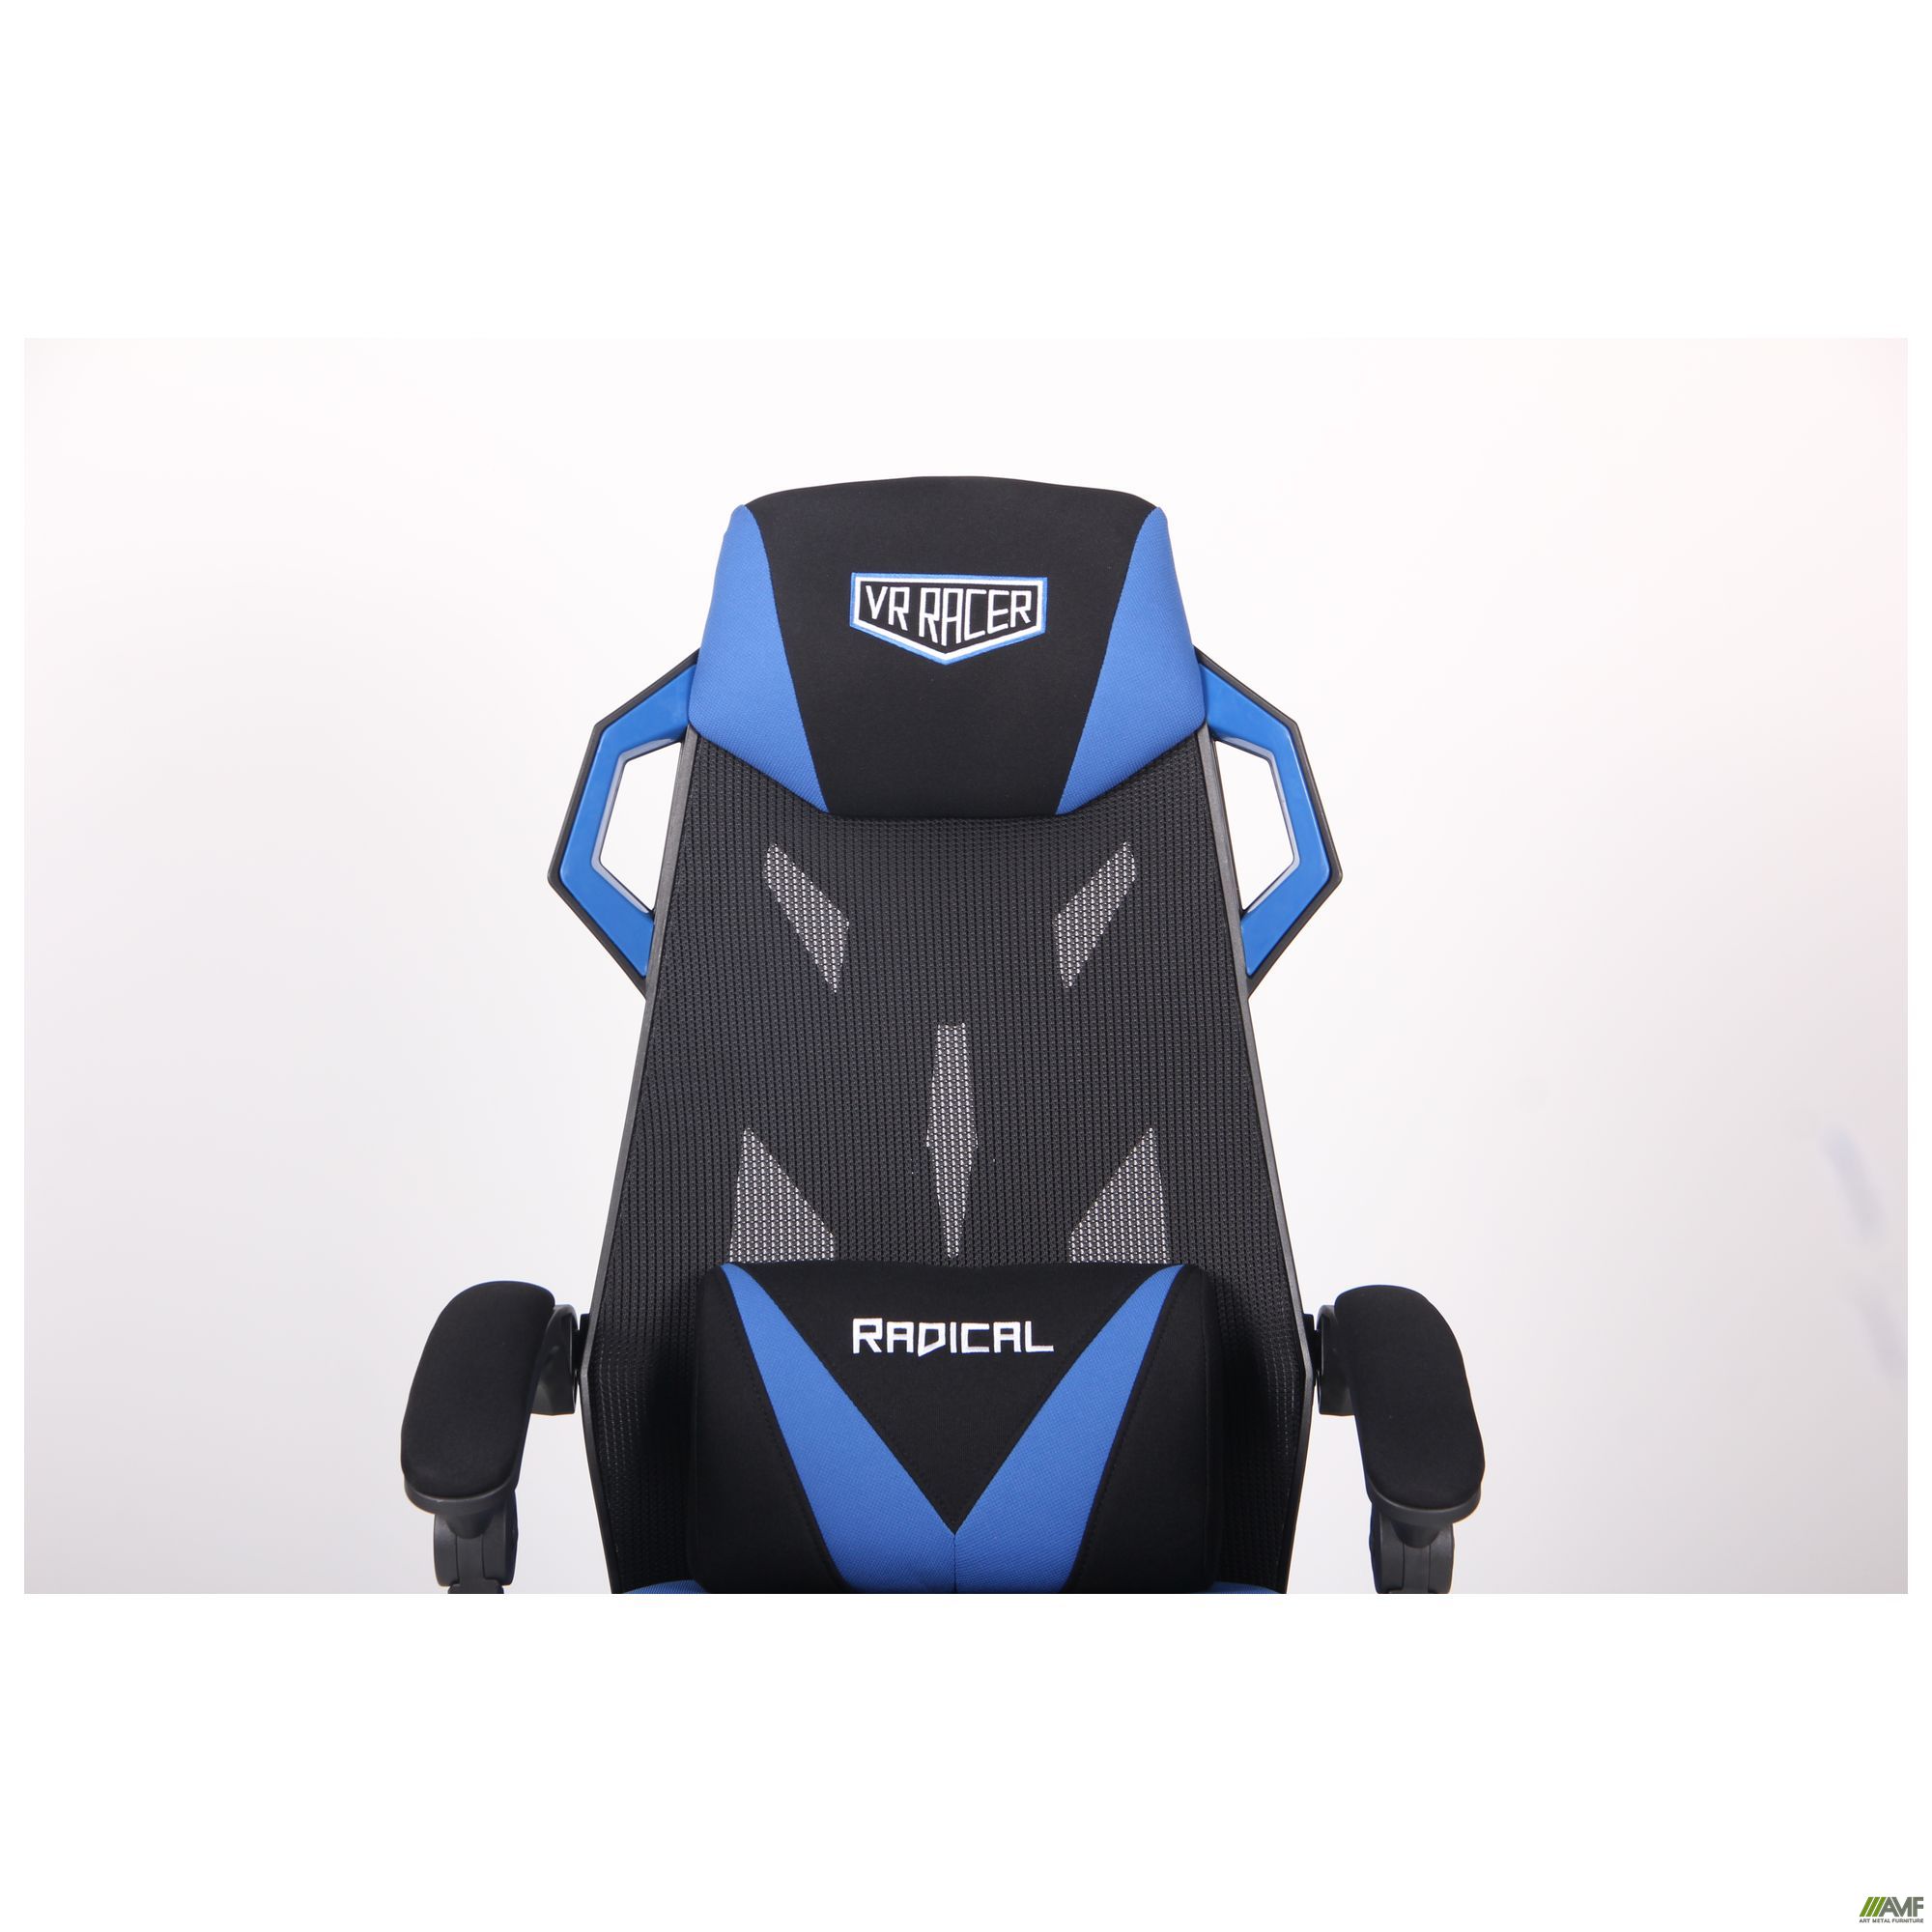 Фото 8 - Кресло VR Racer Radical Garrus черный/синий 